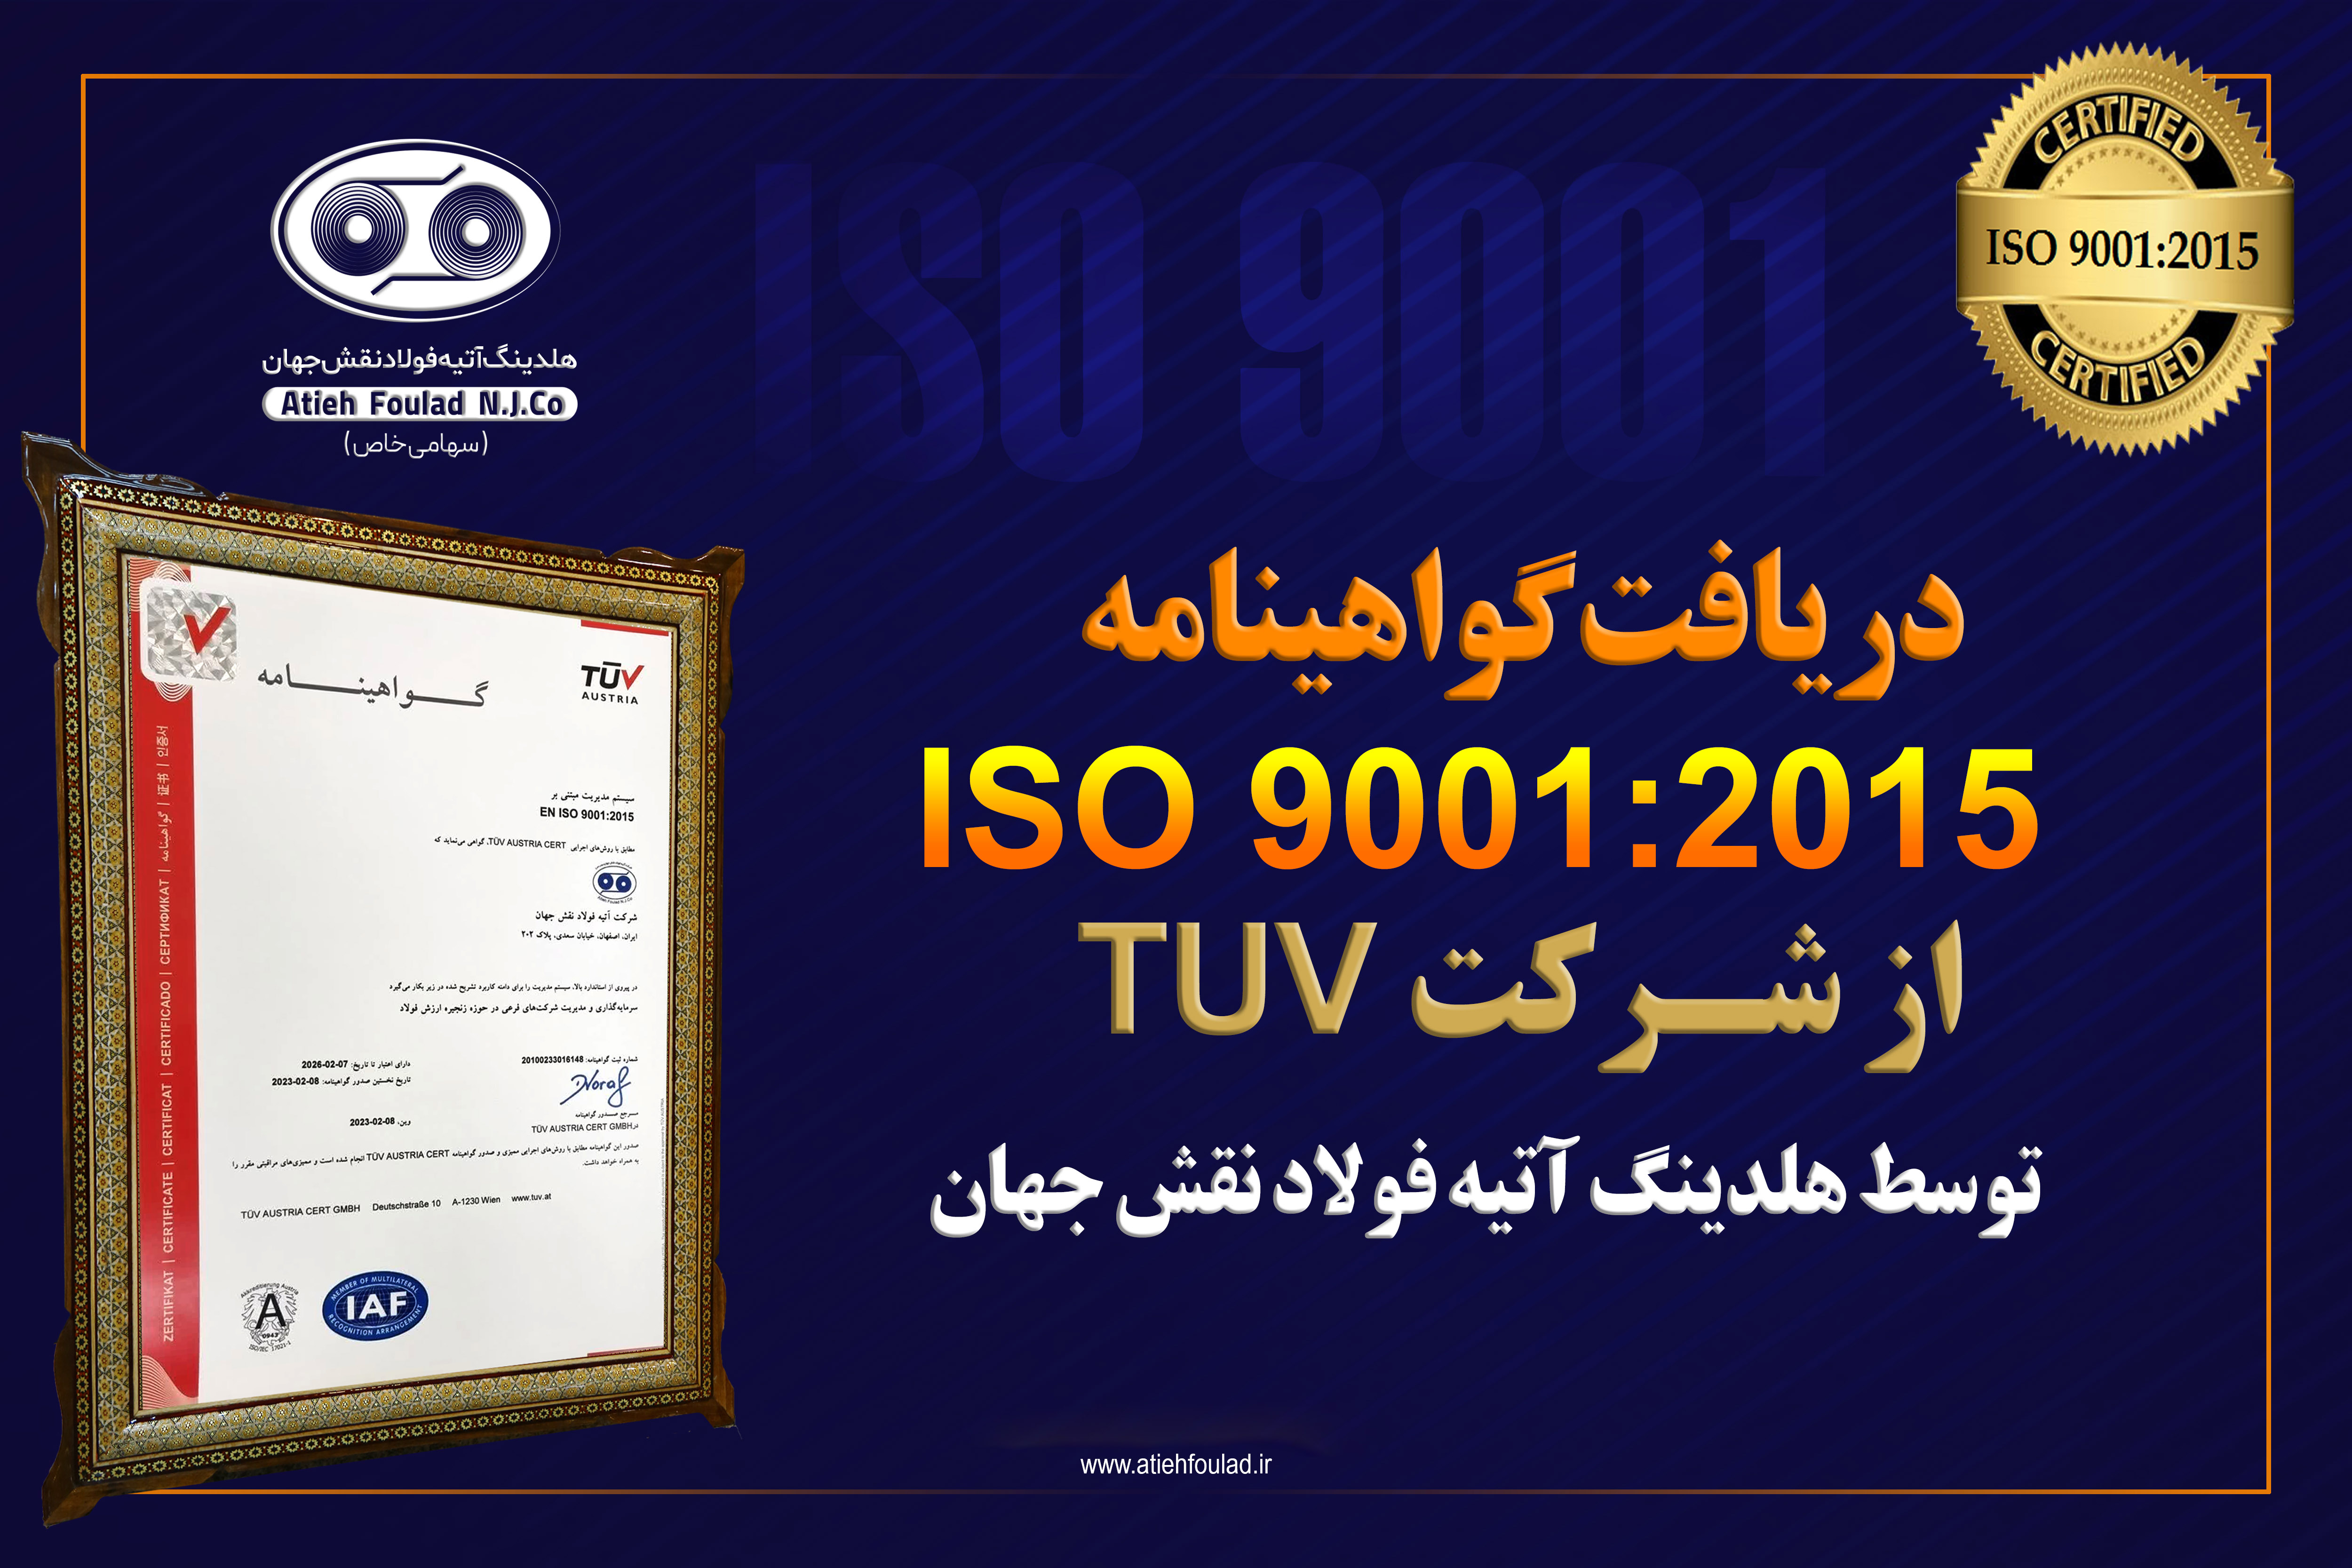 دریافت گواهینامه ISO 9001:2015 از شرکت TUV توسط هلدینگ آتیه فولاد نقش جهان